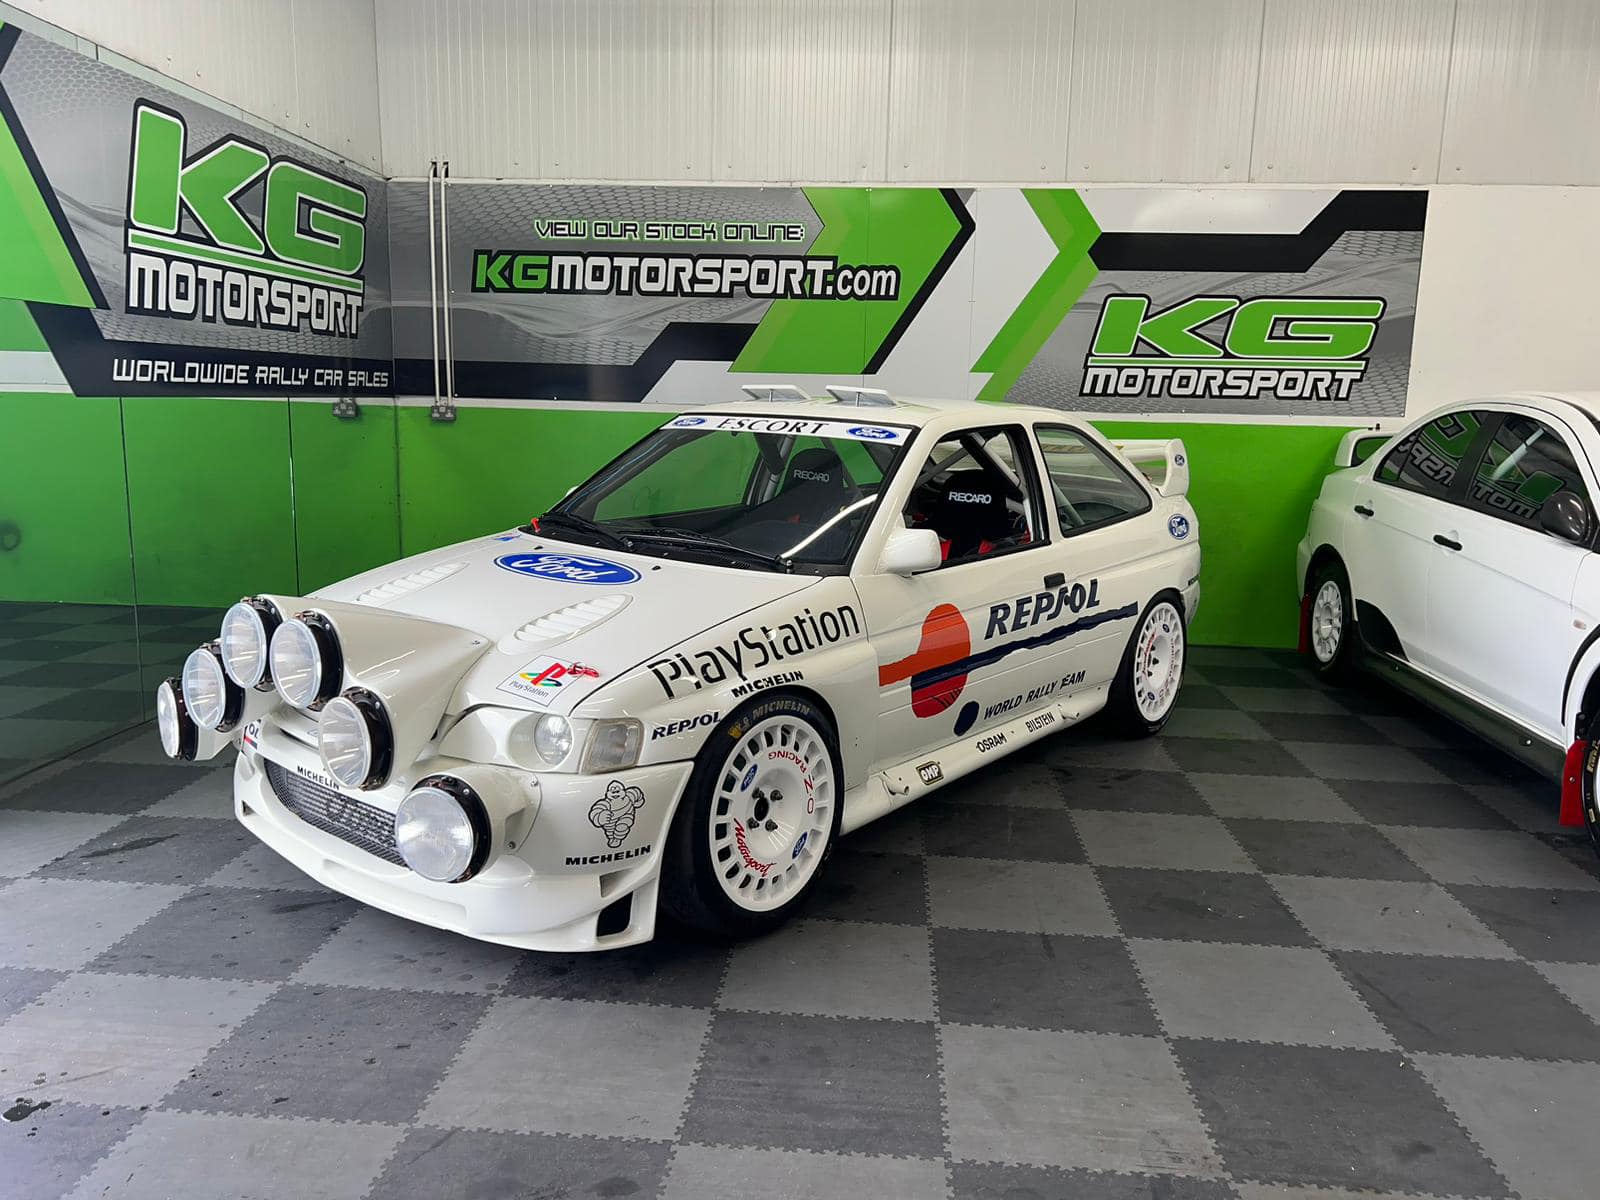 Ford Escort Cosworth WRC Repsol Test Car.